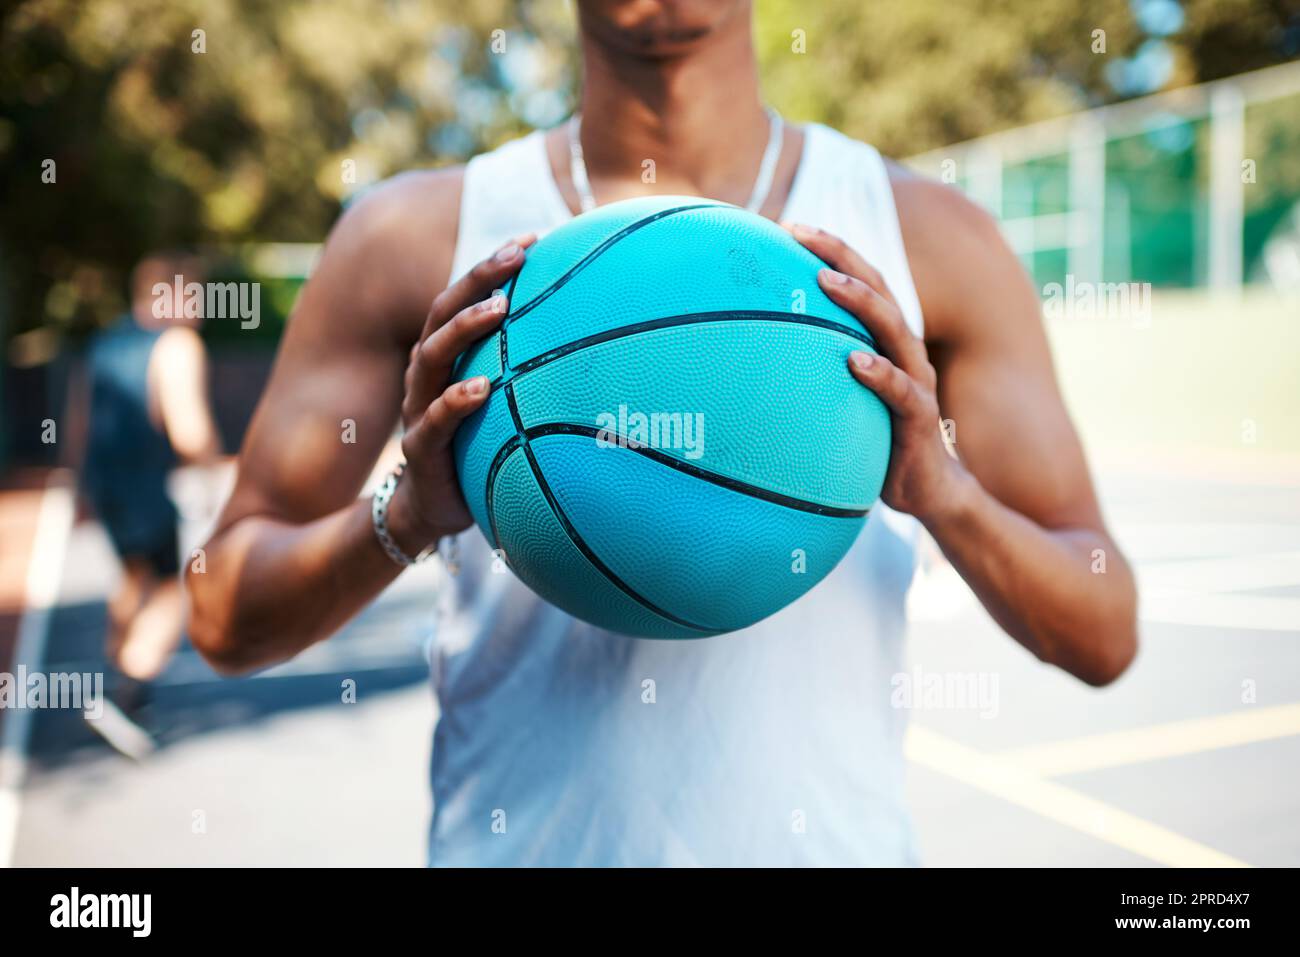 Tout simplement. Gros plan d'un sportif tenant un ballon de basket sur un terrain de sport. Banque D'Images